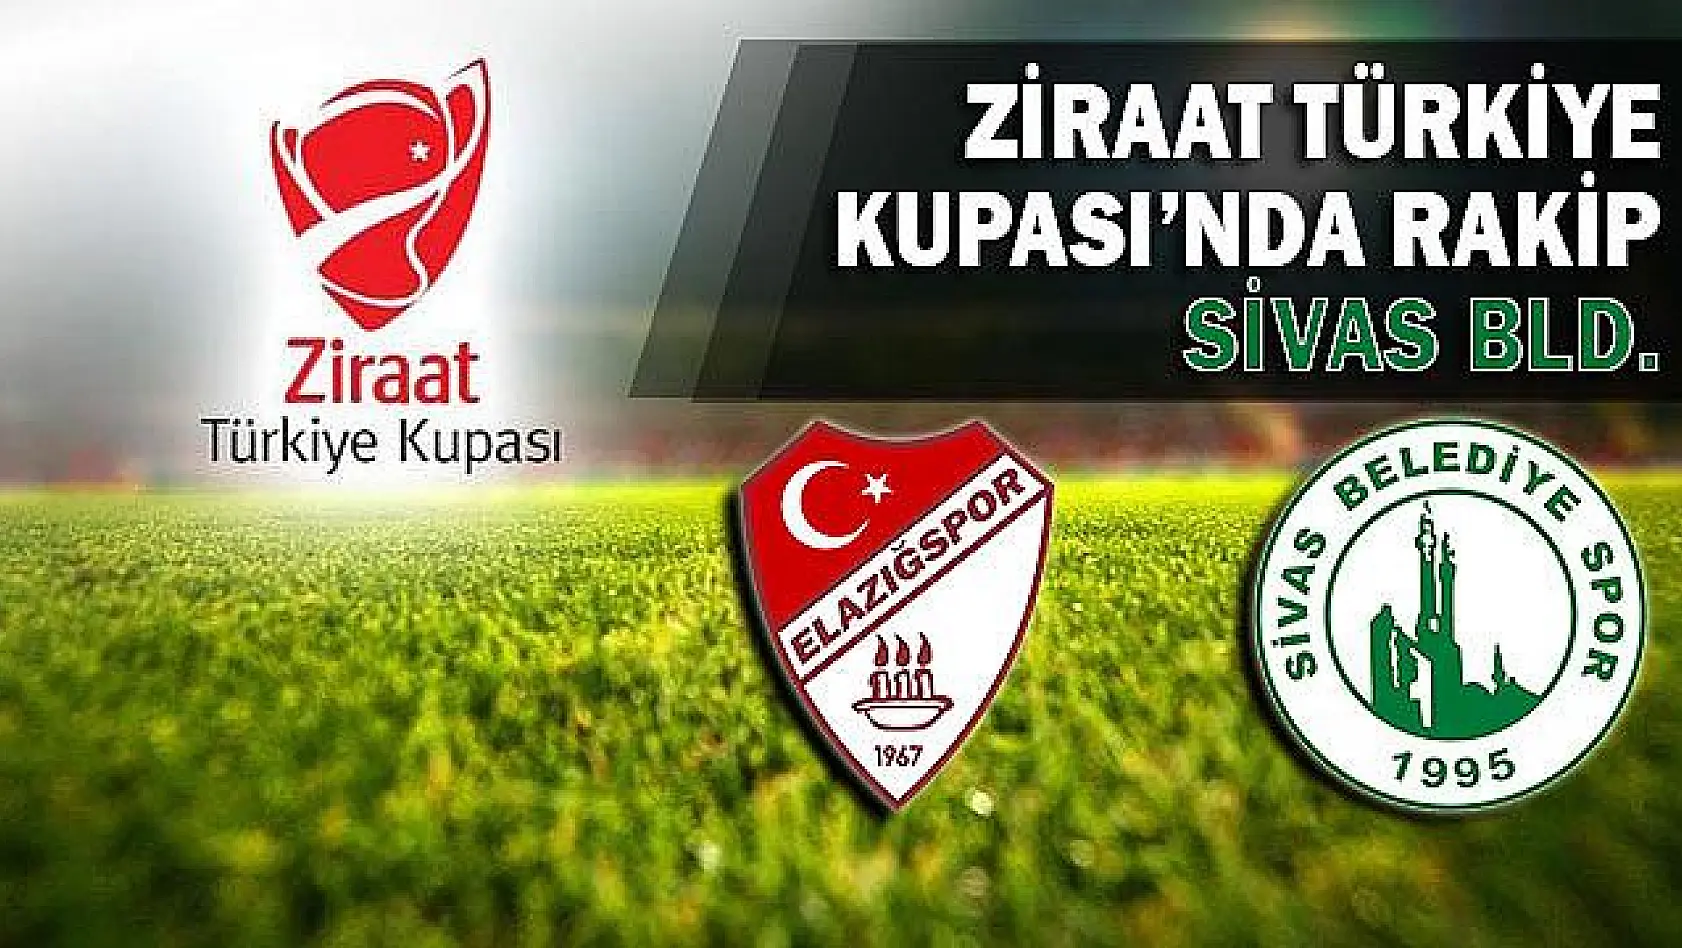 Ziraat Türkiye Kupası'nda rakip Sivas Bld.